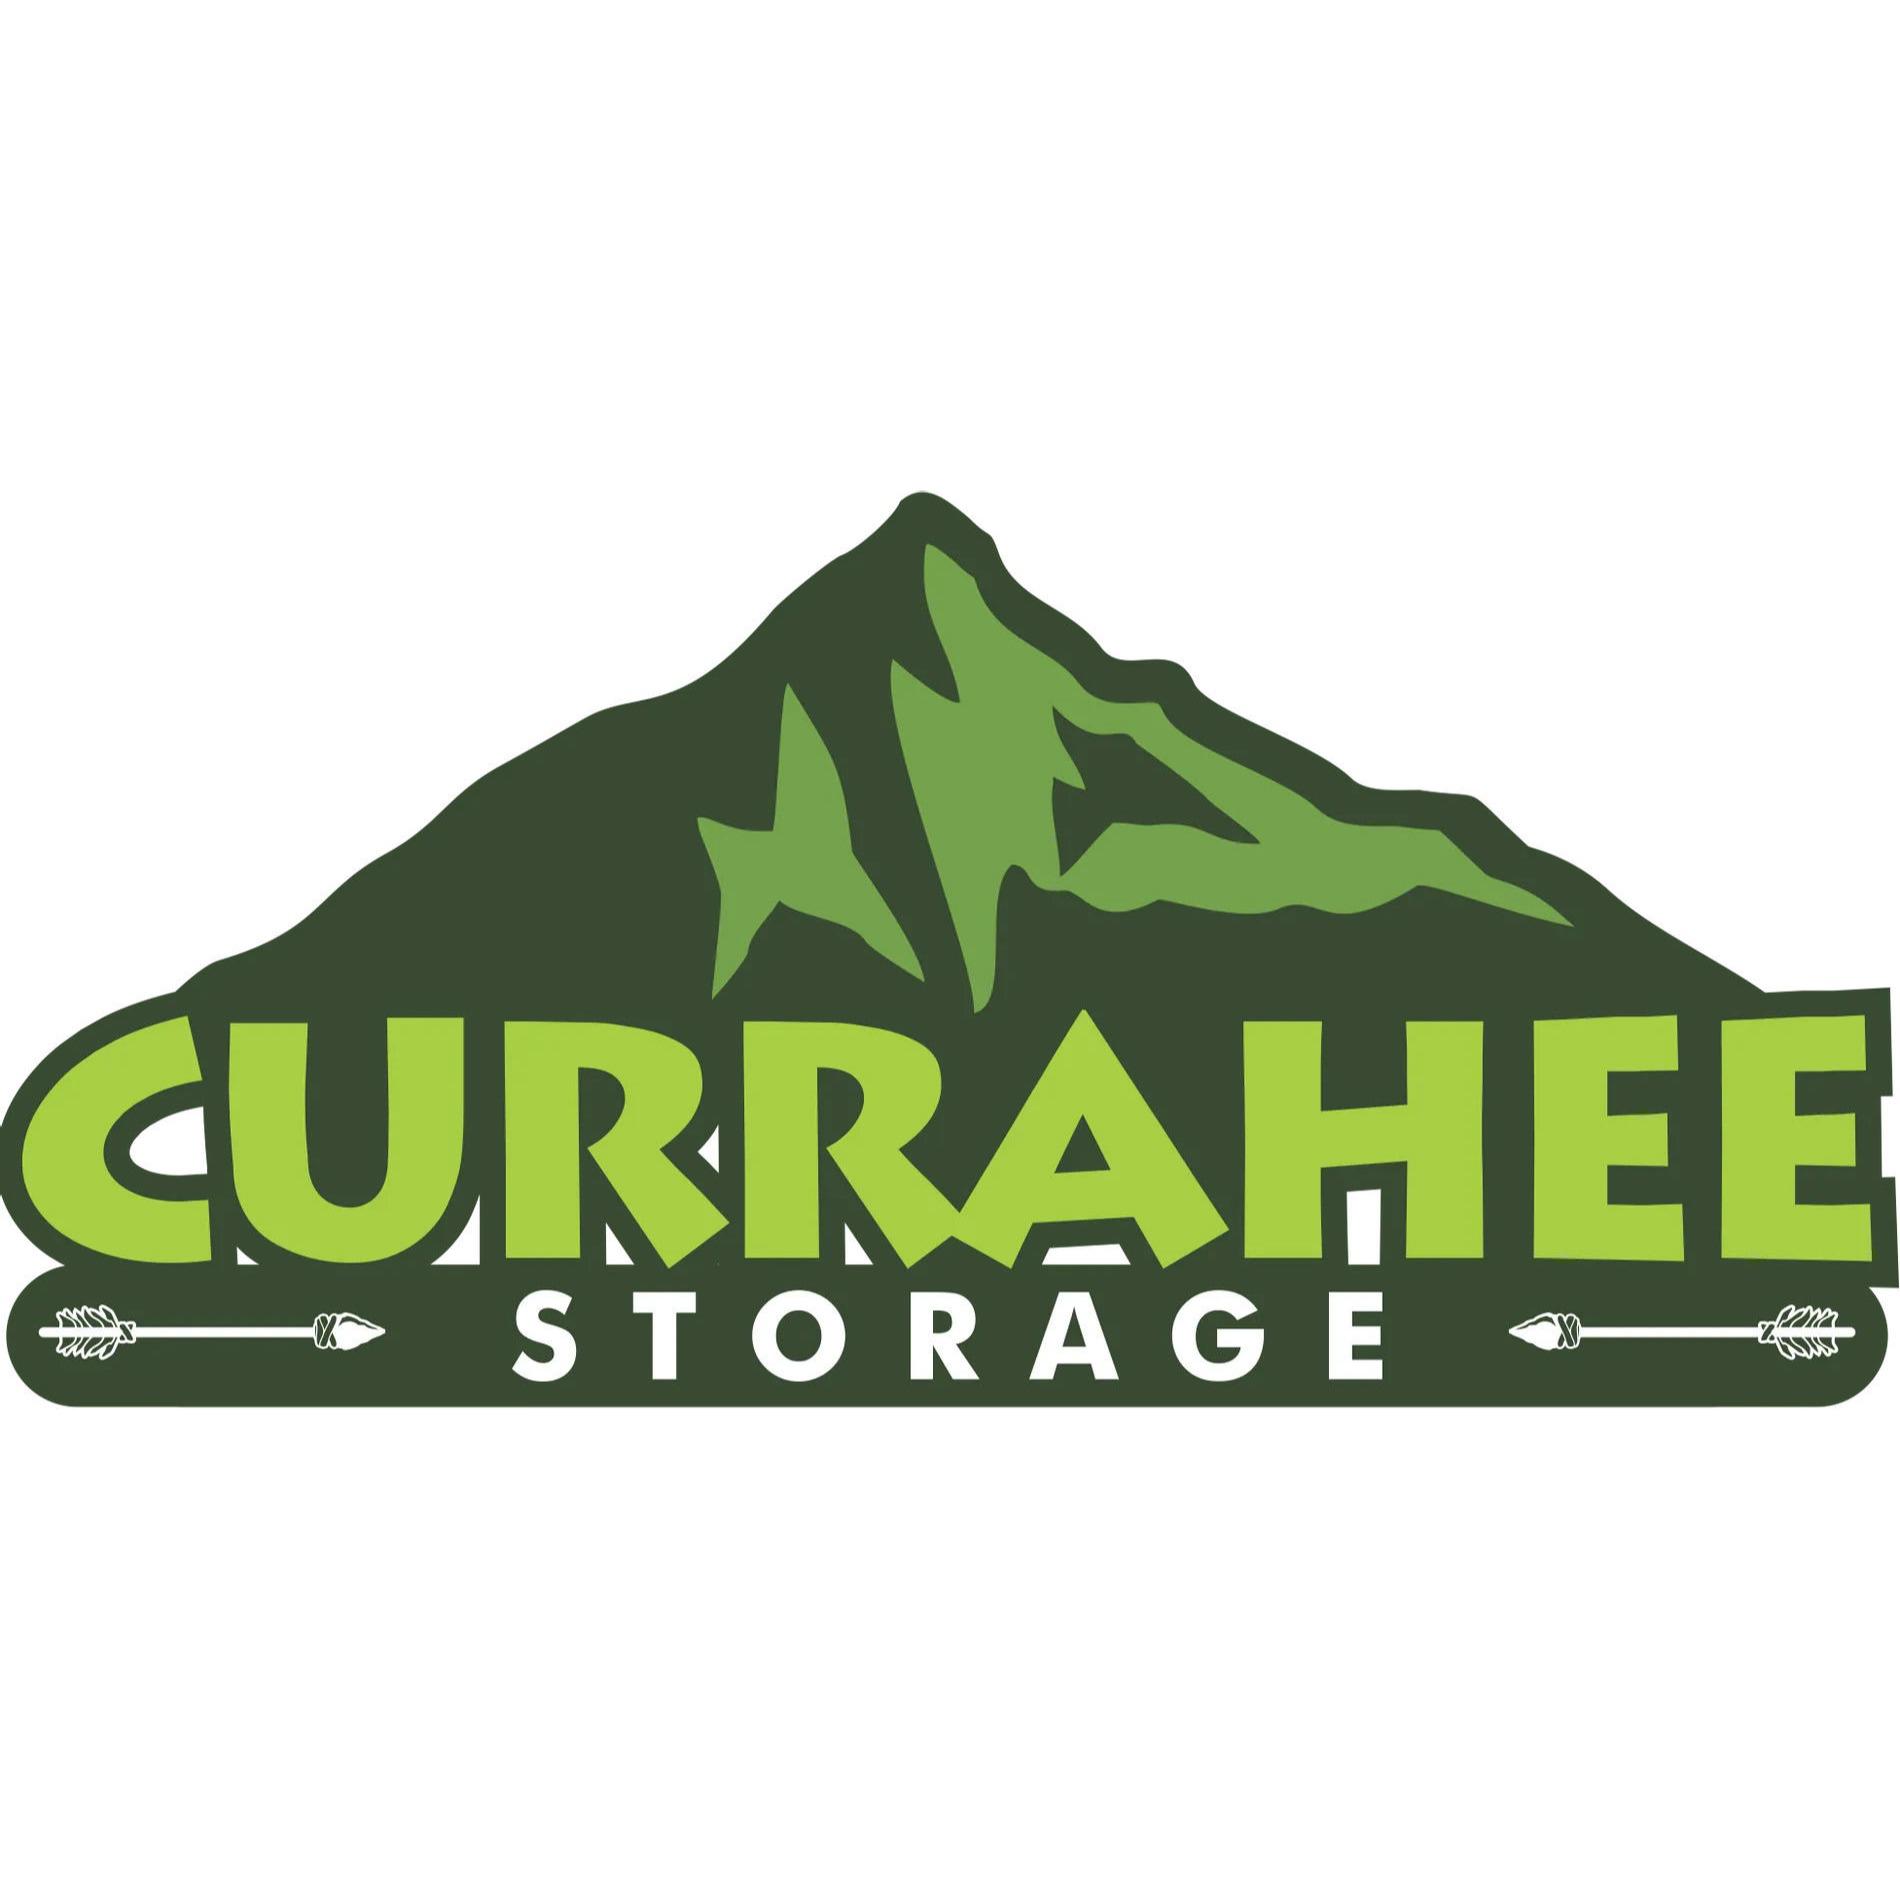 Currahee Storage